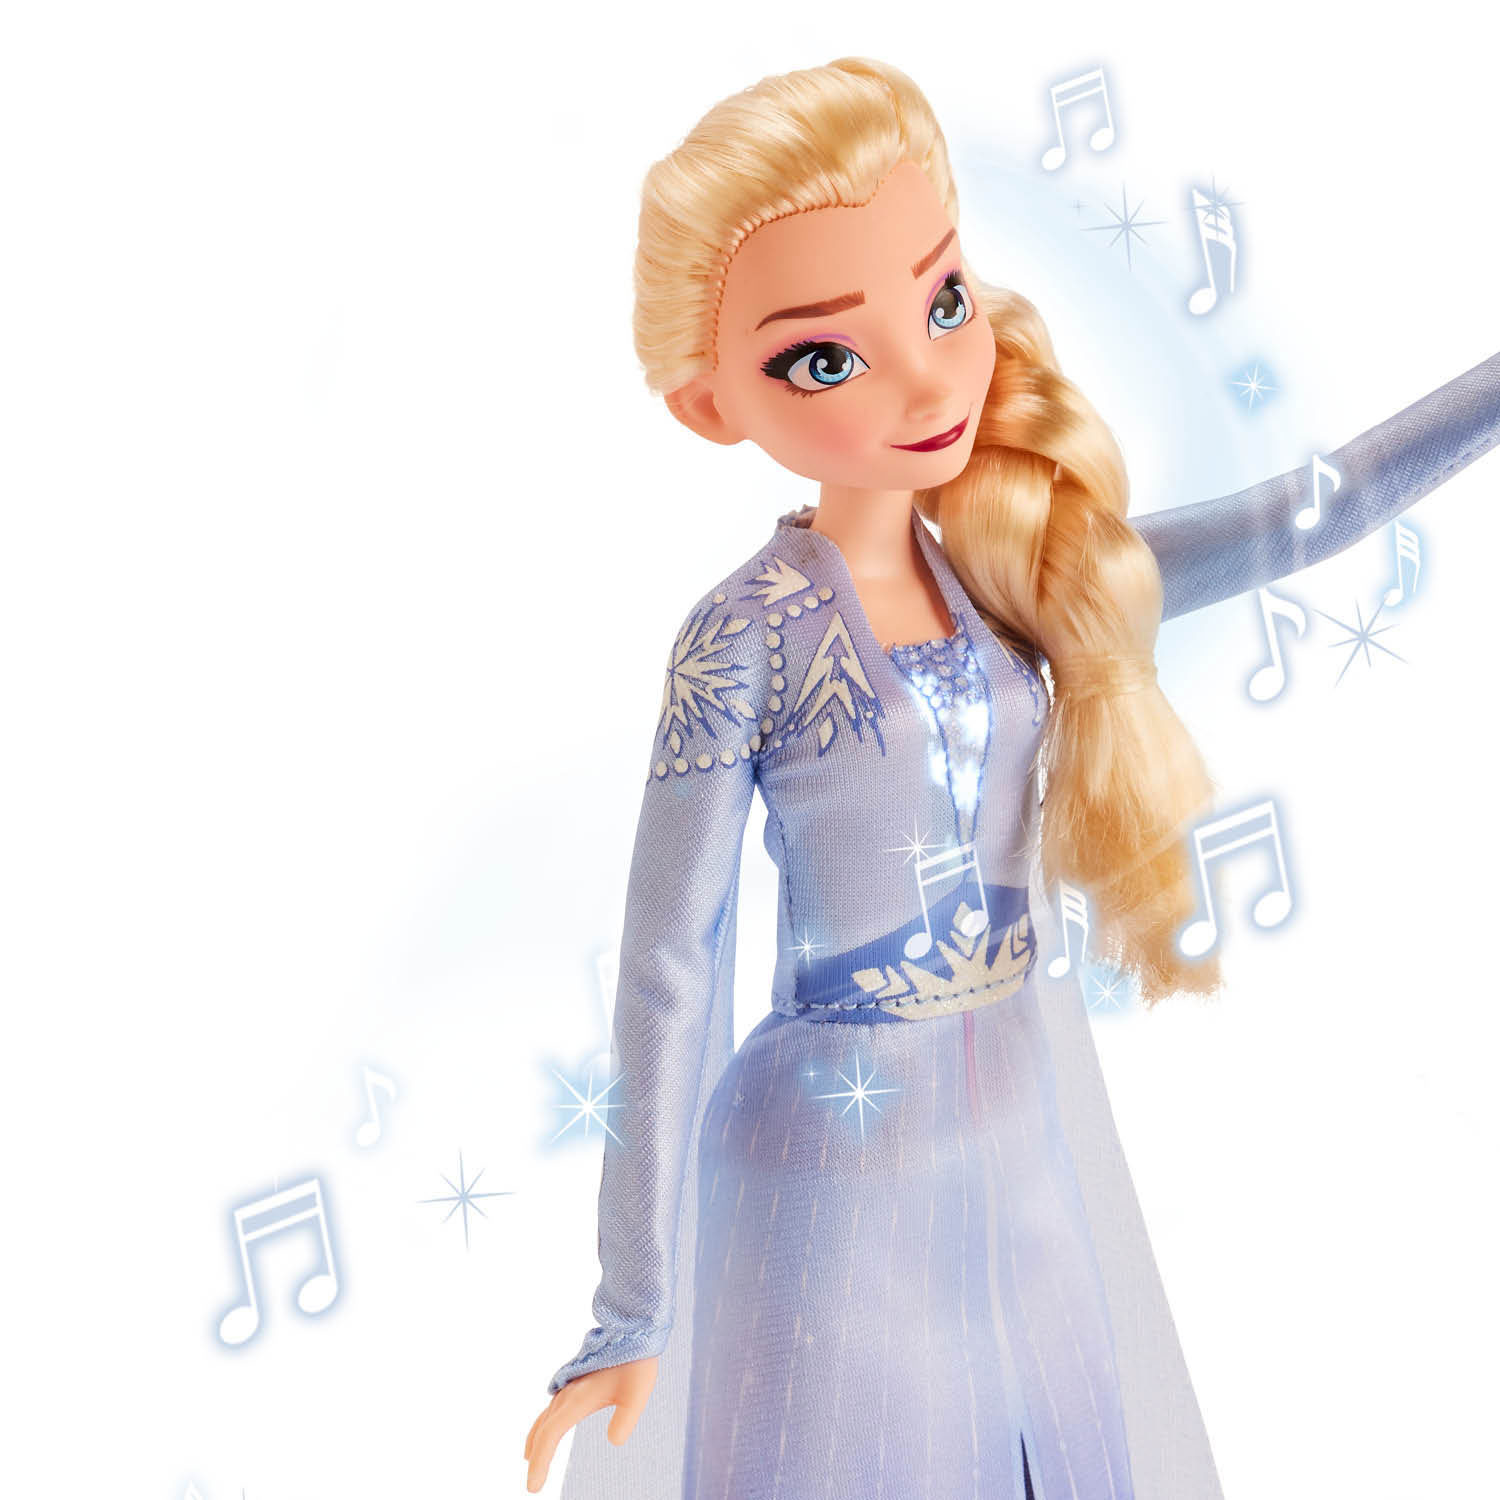 Frozen 2 Singende Elsa